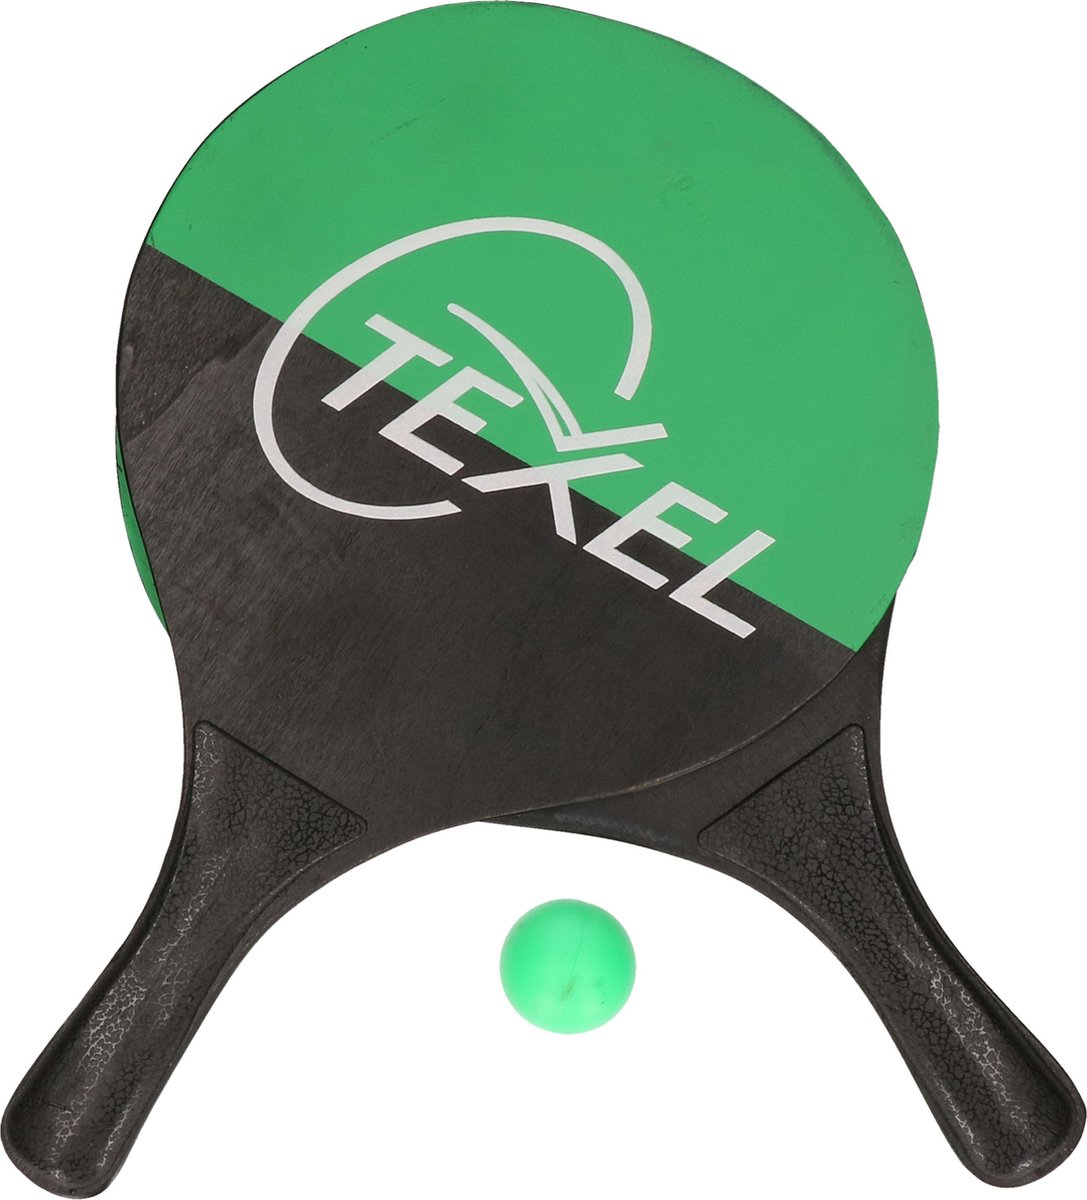 Houten beachball set groen/zwart - Strand balletjes - Rackets/batjes en bal - Tennis ballenspel - Gebro